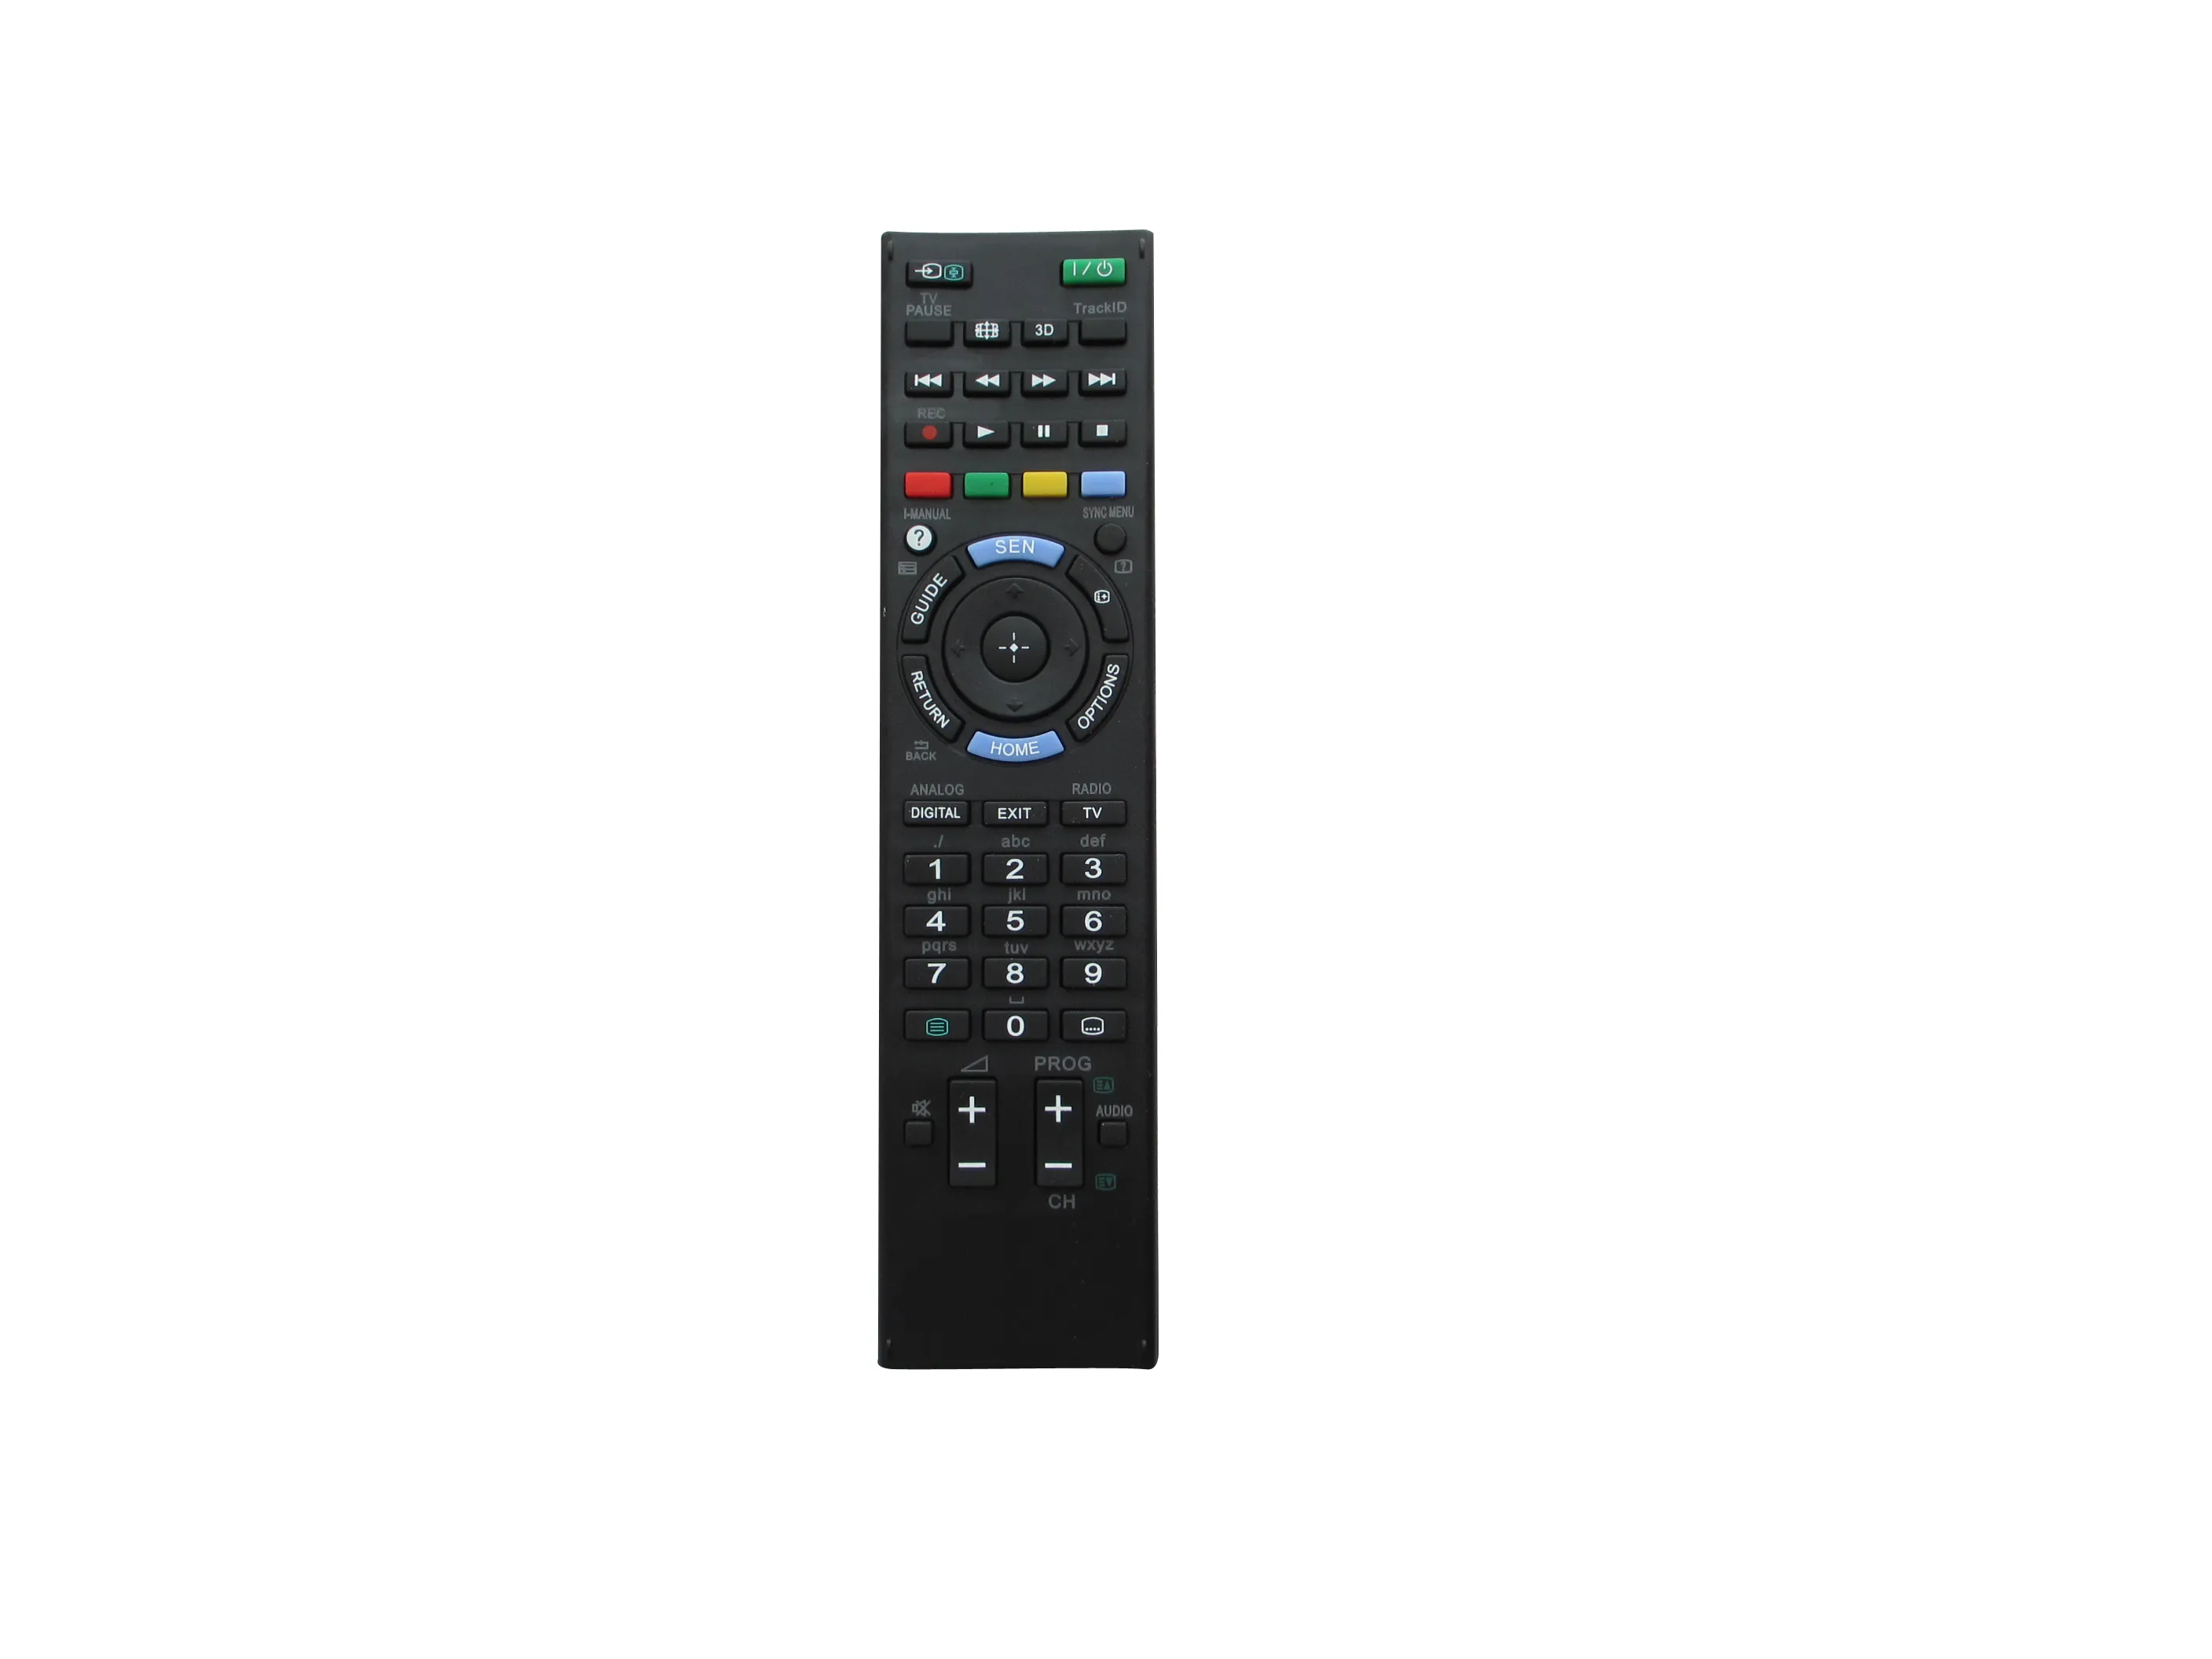 Sony RM-ED050 KDL-46EX650 KDL-46EX653 KDL-46EX655 KDL-40EX650 KDL-40EX653 KDL-40EX655 KDL-32EX650 KDL-32EX6655 KDL-26EX550 Bravia LED HDTV TV TV